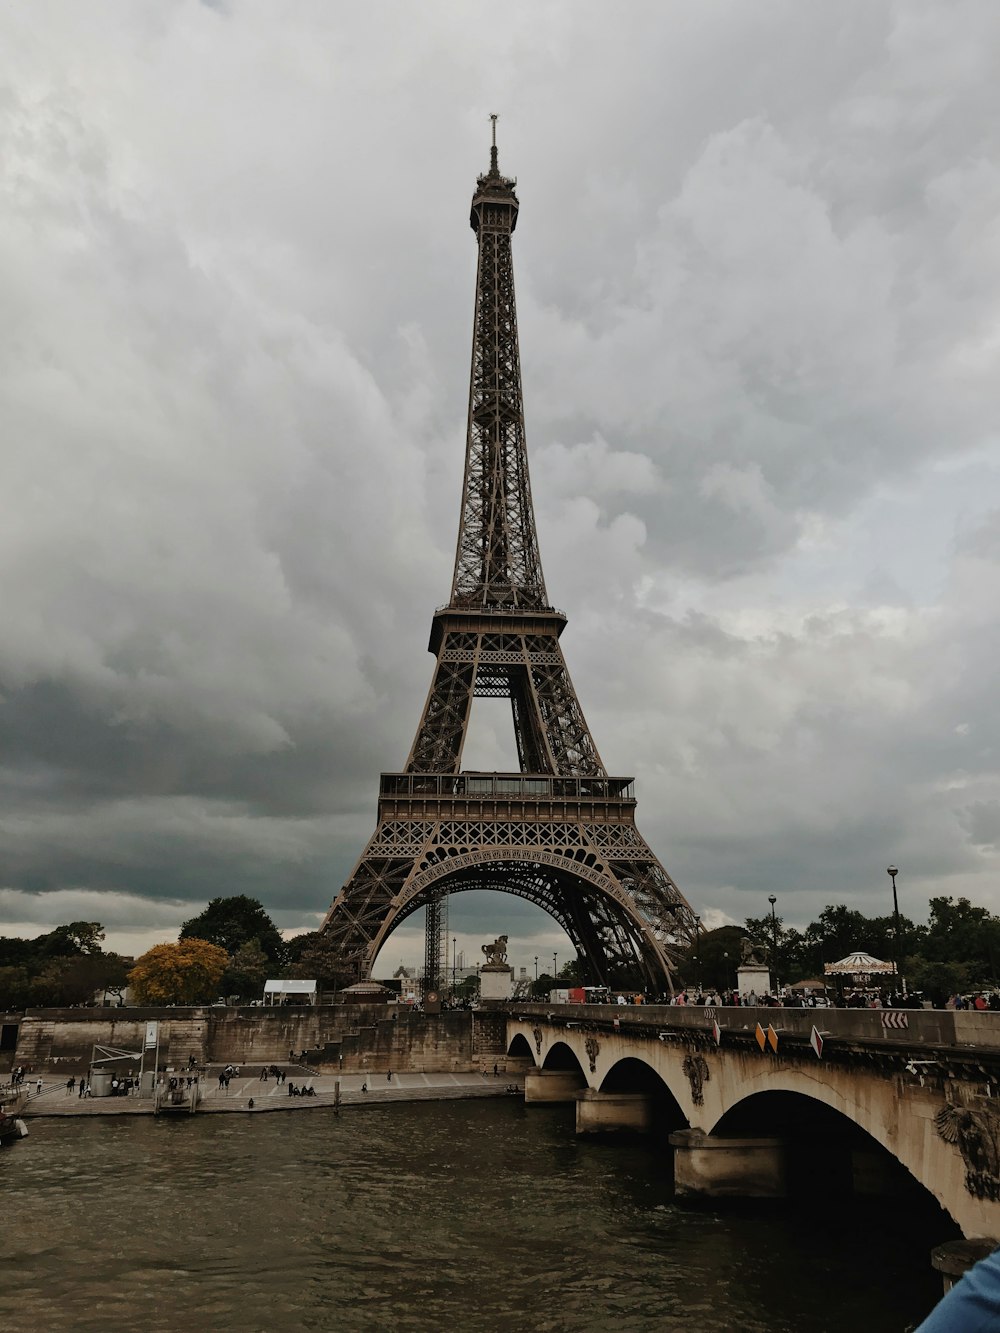 Eiffel tower under white clouds